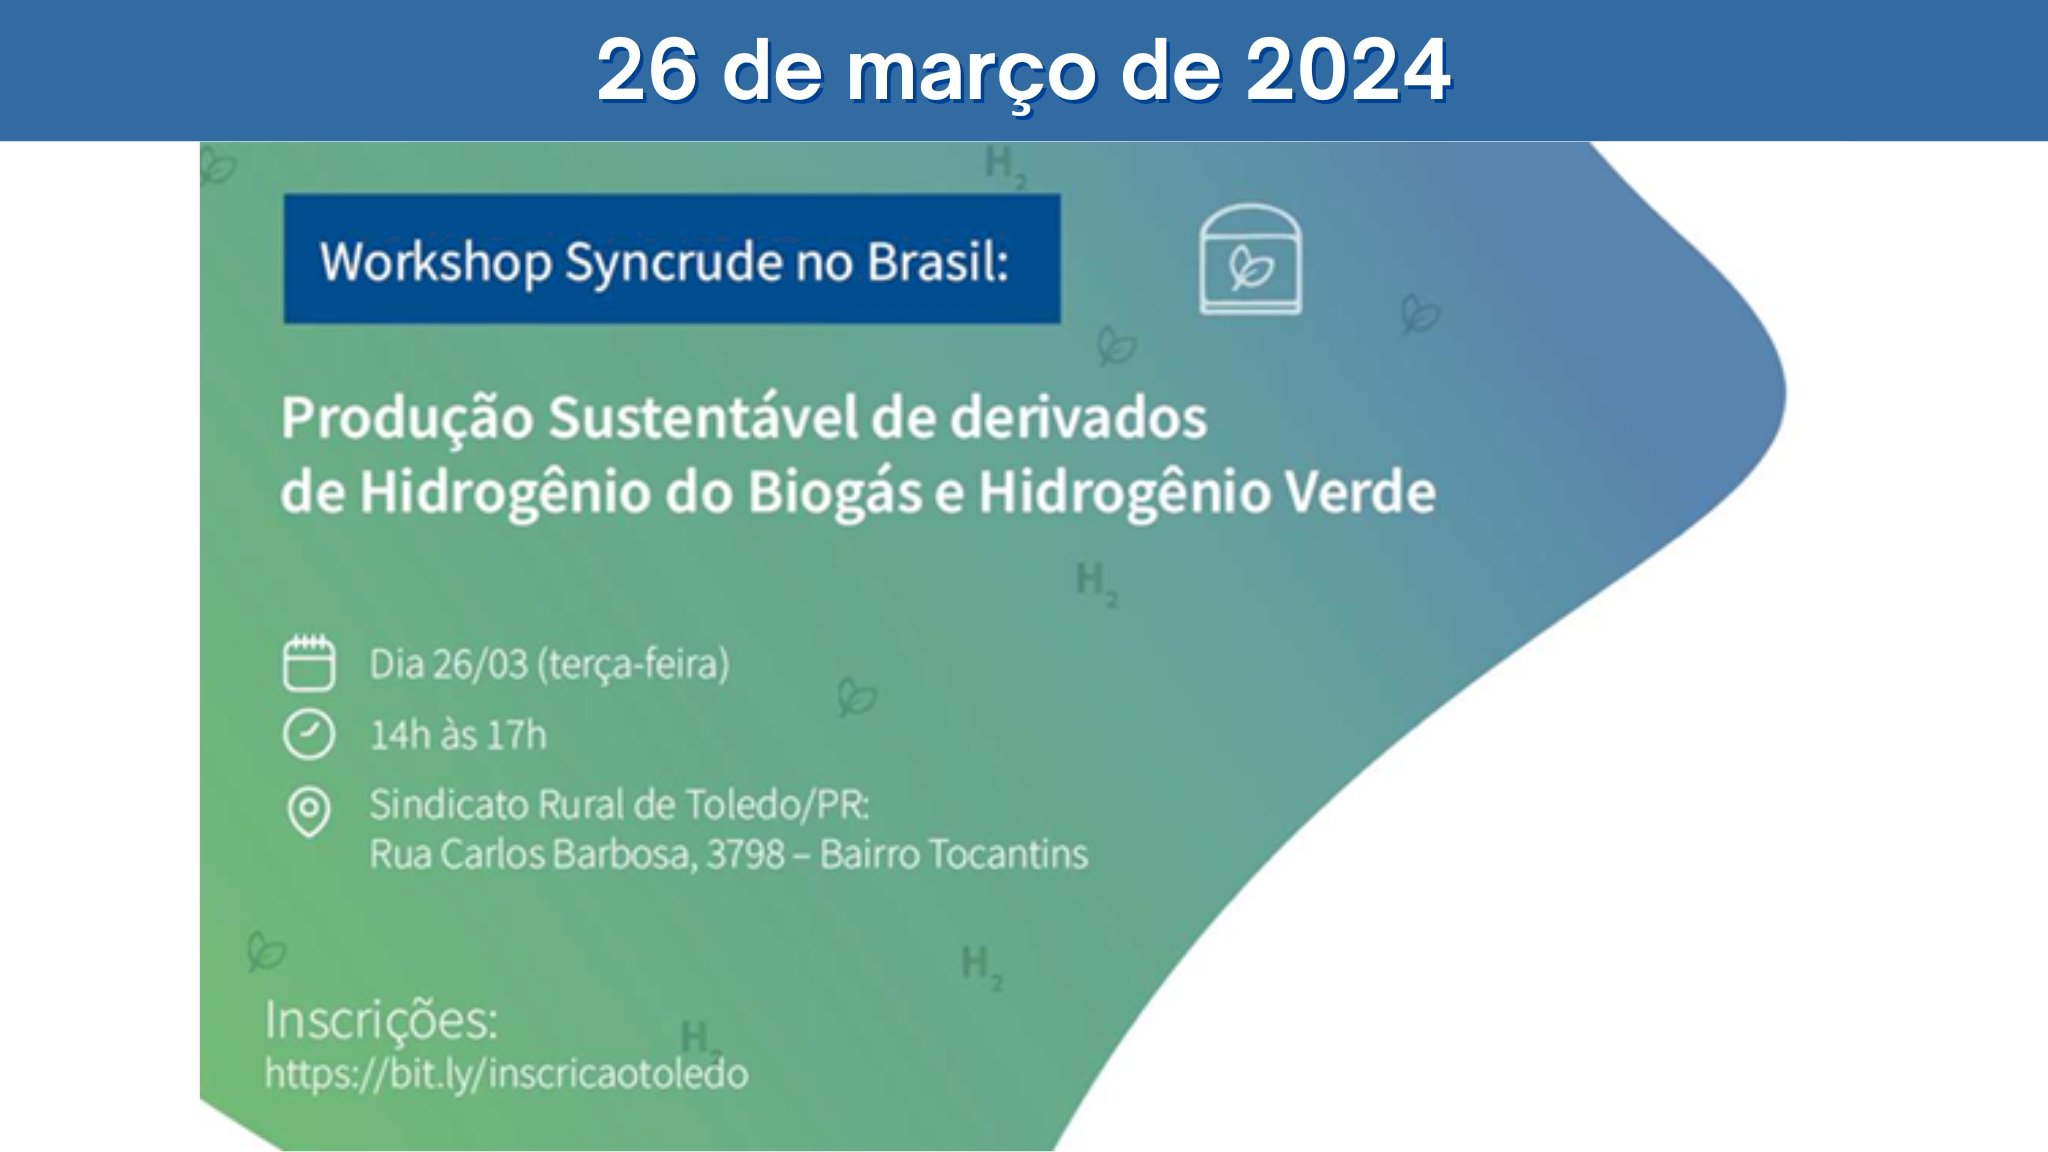 Workshop Syncrude no Brasil: Produção Sustentável de derivados de Hidrogênio do Biogás e Hidrogênio Verde